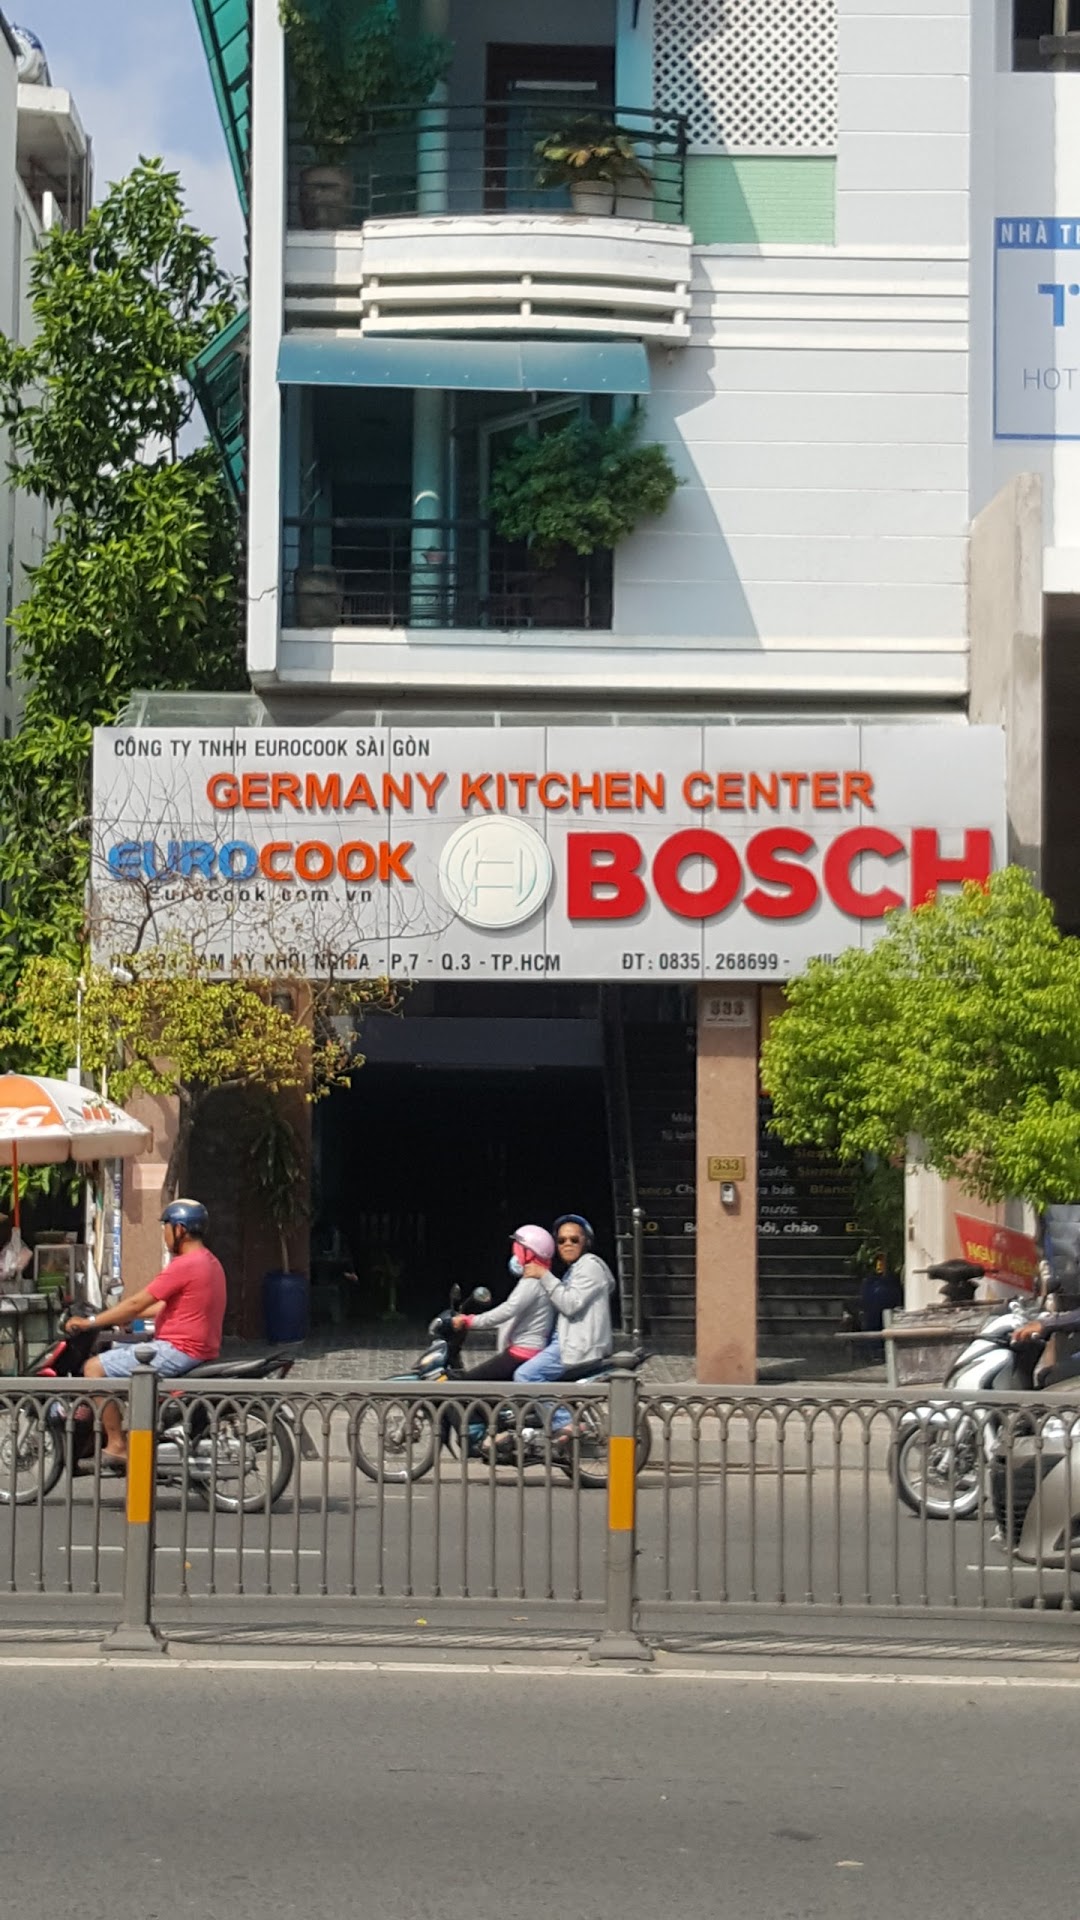 Thiết bị nhà bếp Bosch Germany